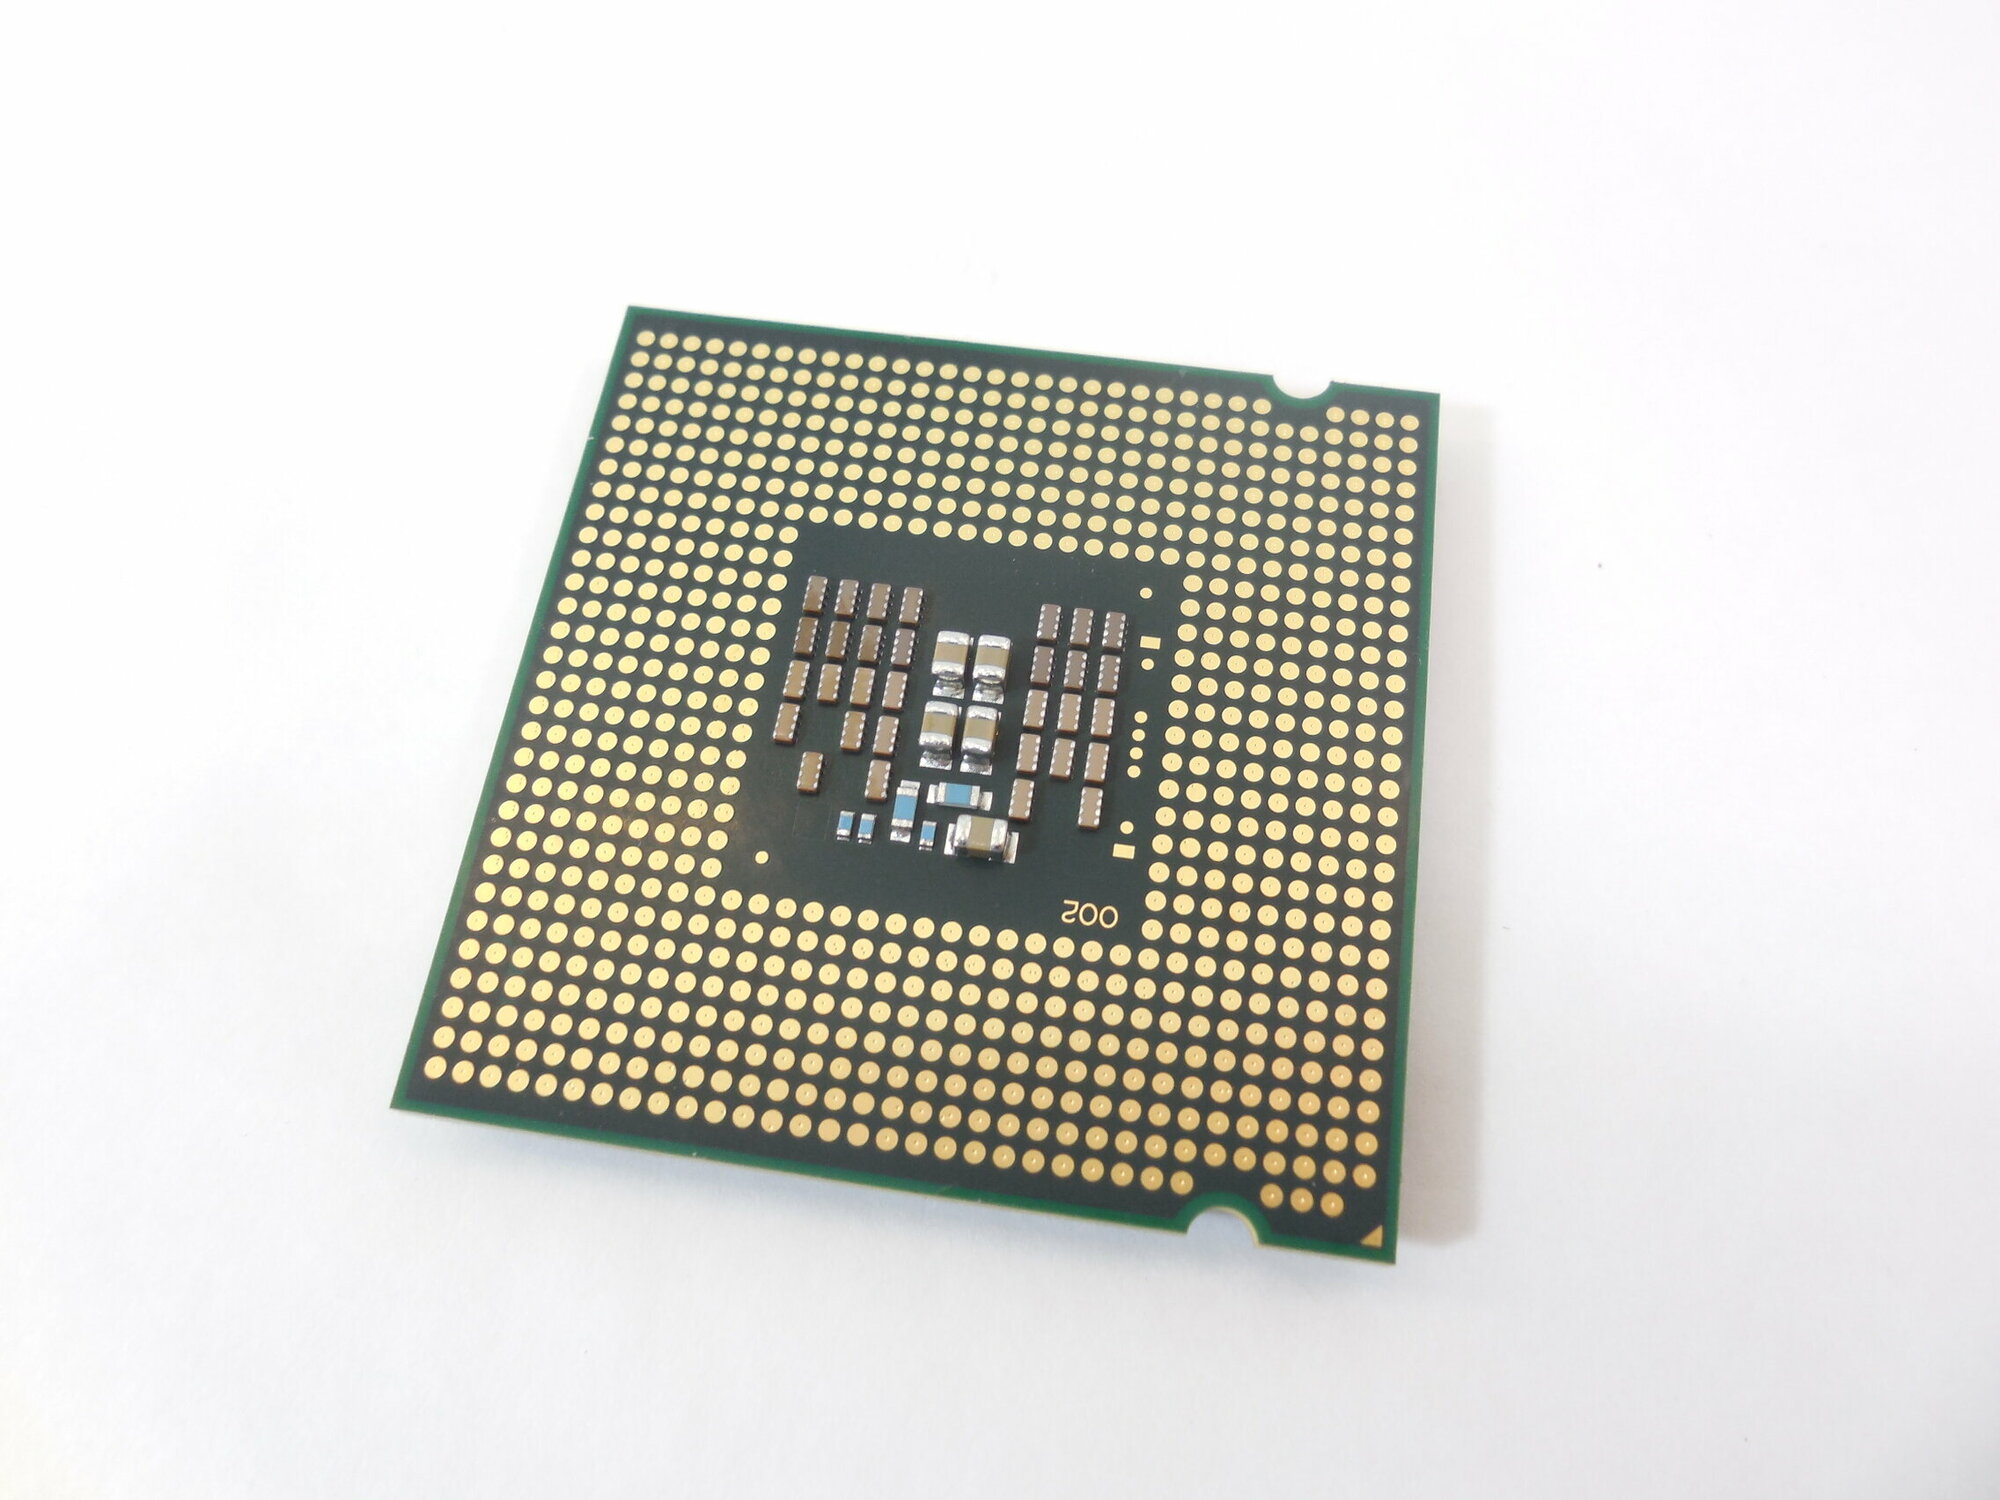 Процессор Intel Core 2 Quad Q8200 Yorkfield LGA775 4 x 2333 МГц